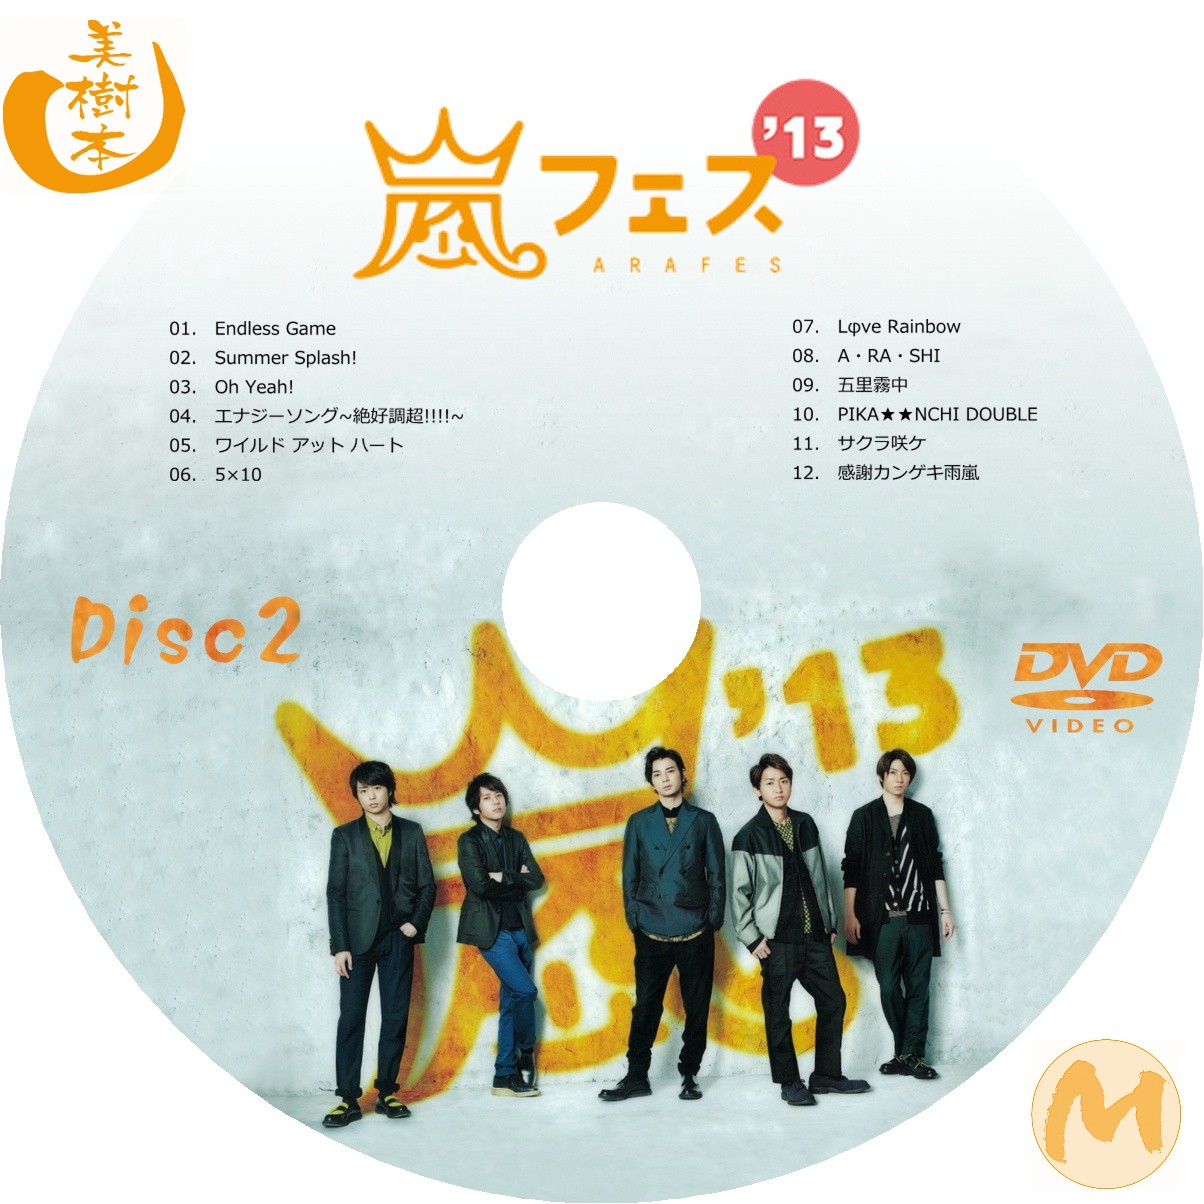 アラフェス 2013 DVD 嵐 - 3